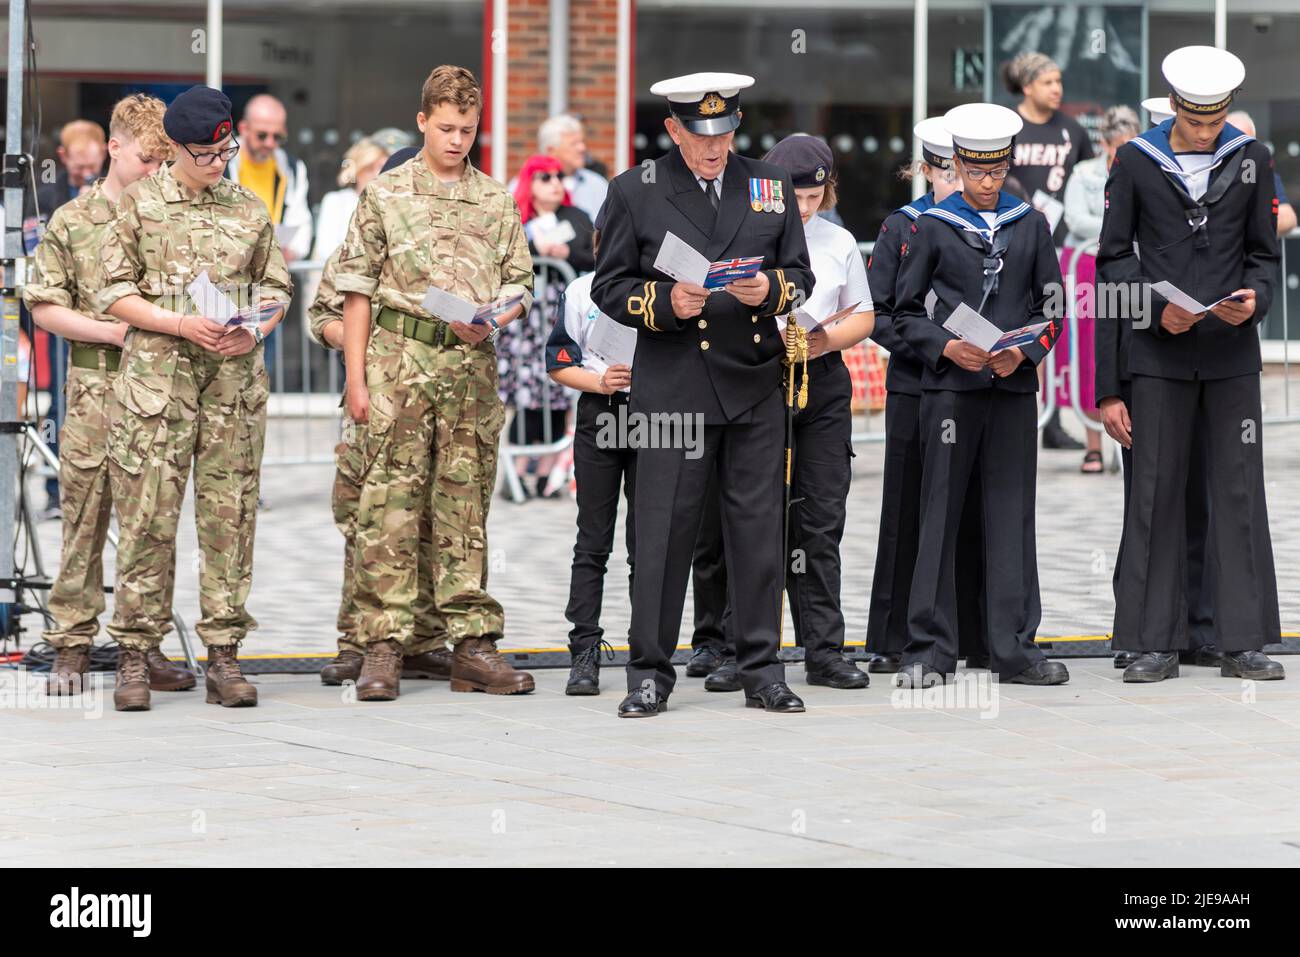 Evento di commemorazione militare della Giornata delle forze armate ad High Street, Southend on Sea, Essex, Regno Unito. Cadetti dell'esercito e della marina cantano inni Foto Stock